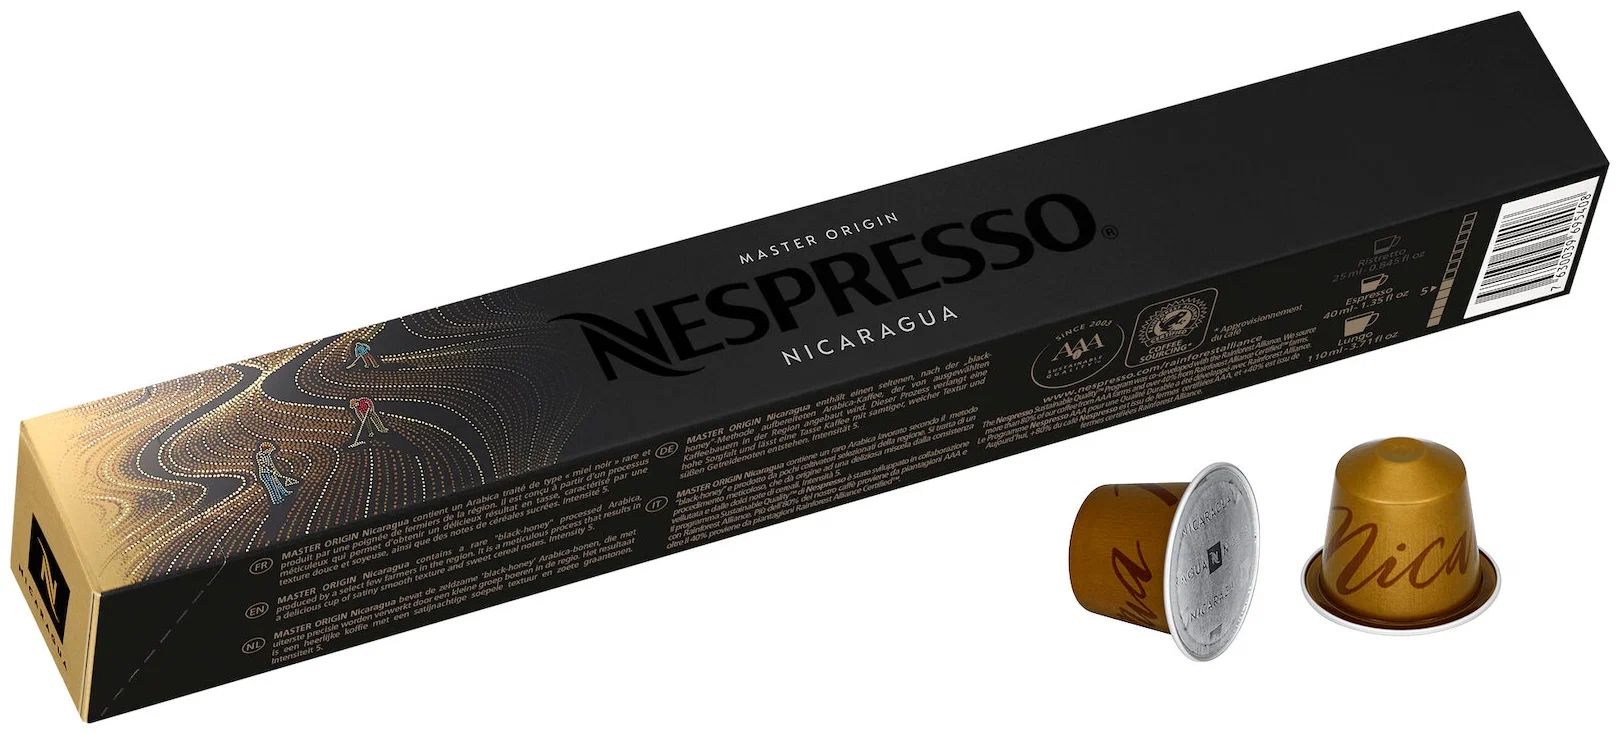 Кофе в капсулах Nespresso Nicaragua, упаковка 10 шт.